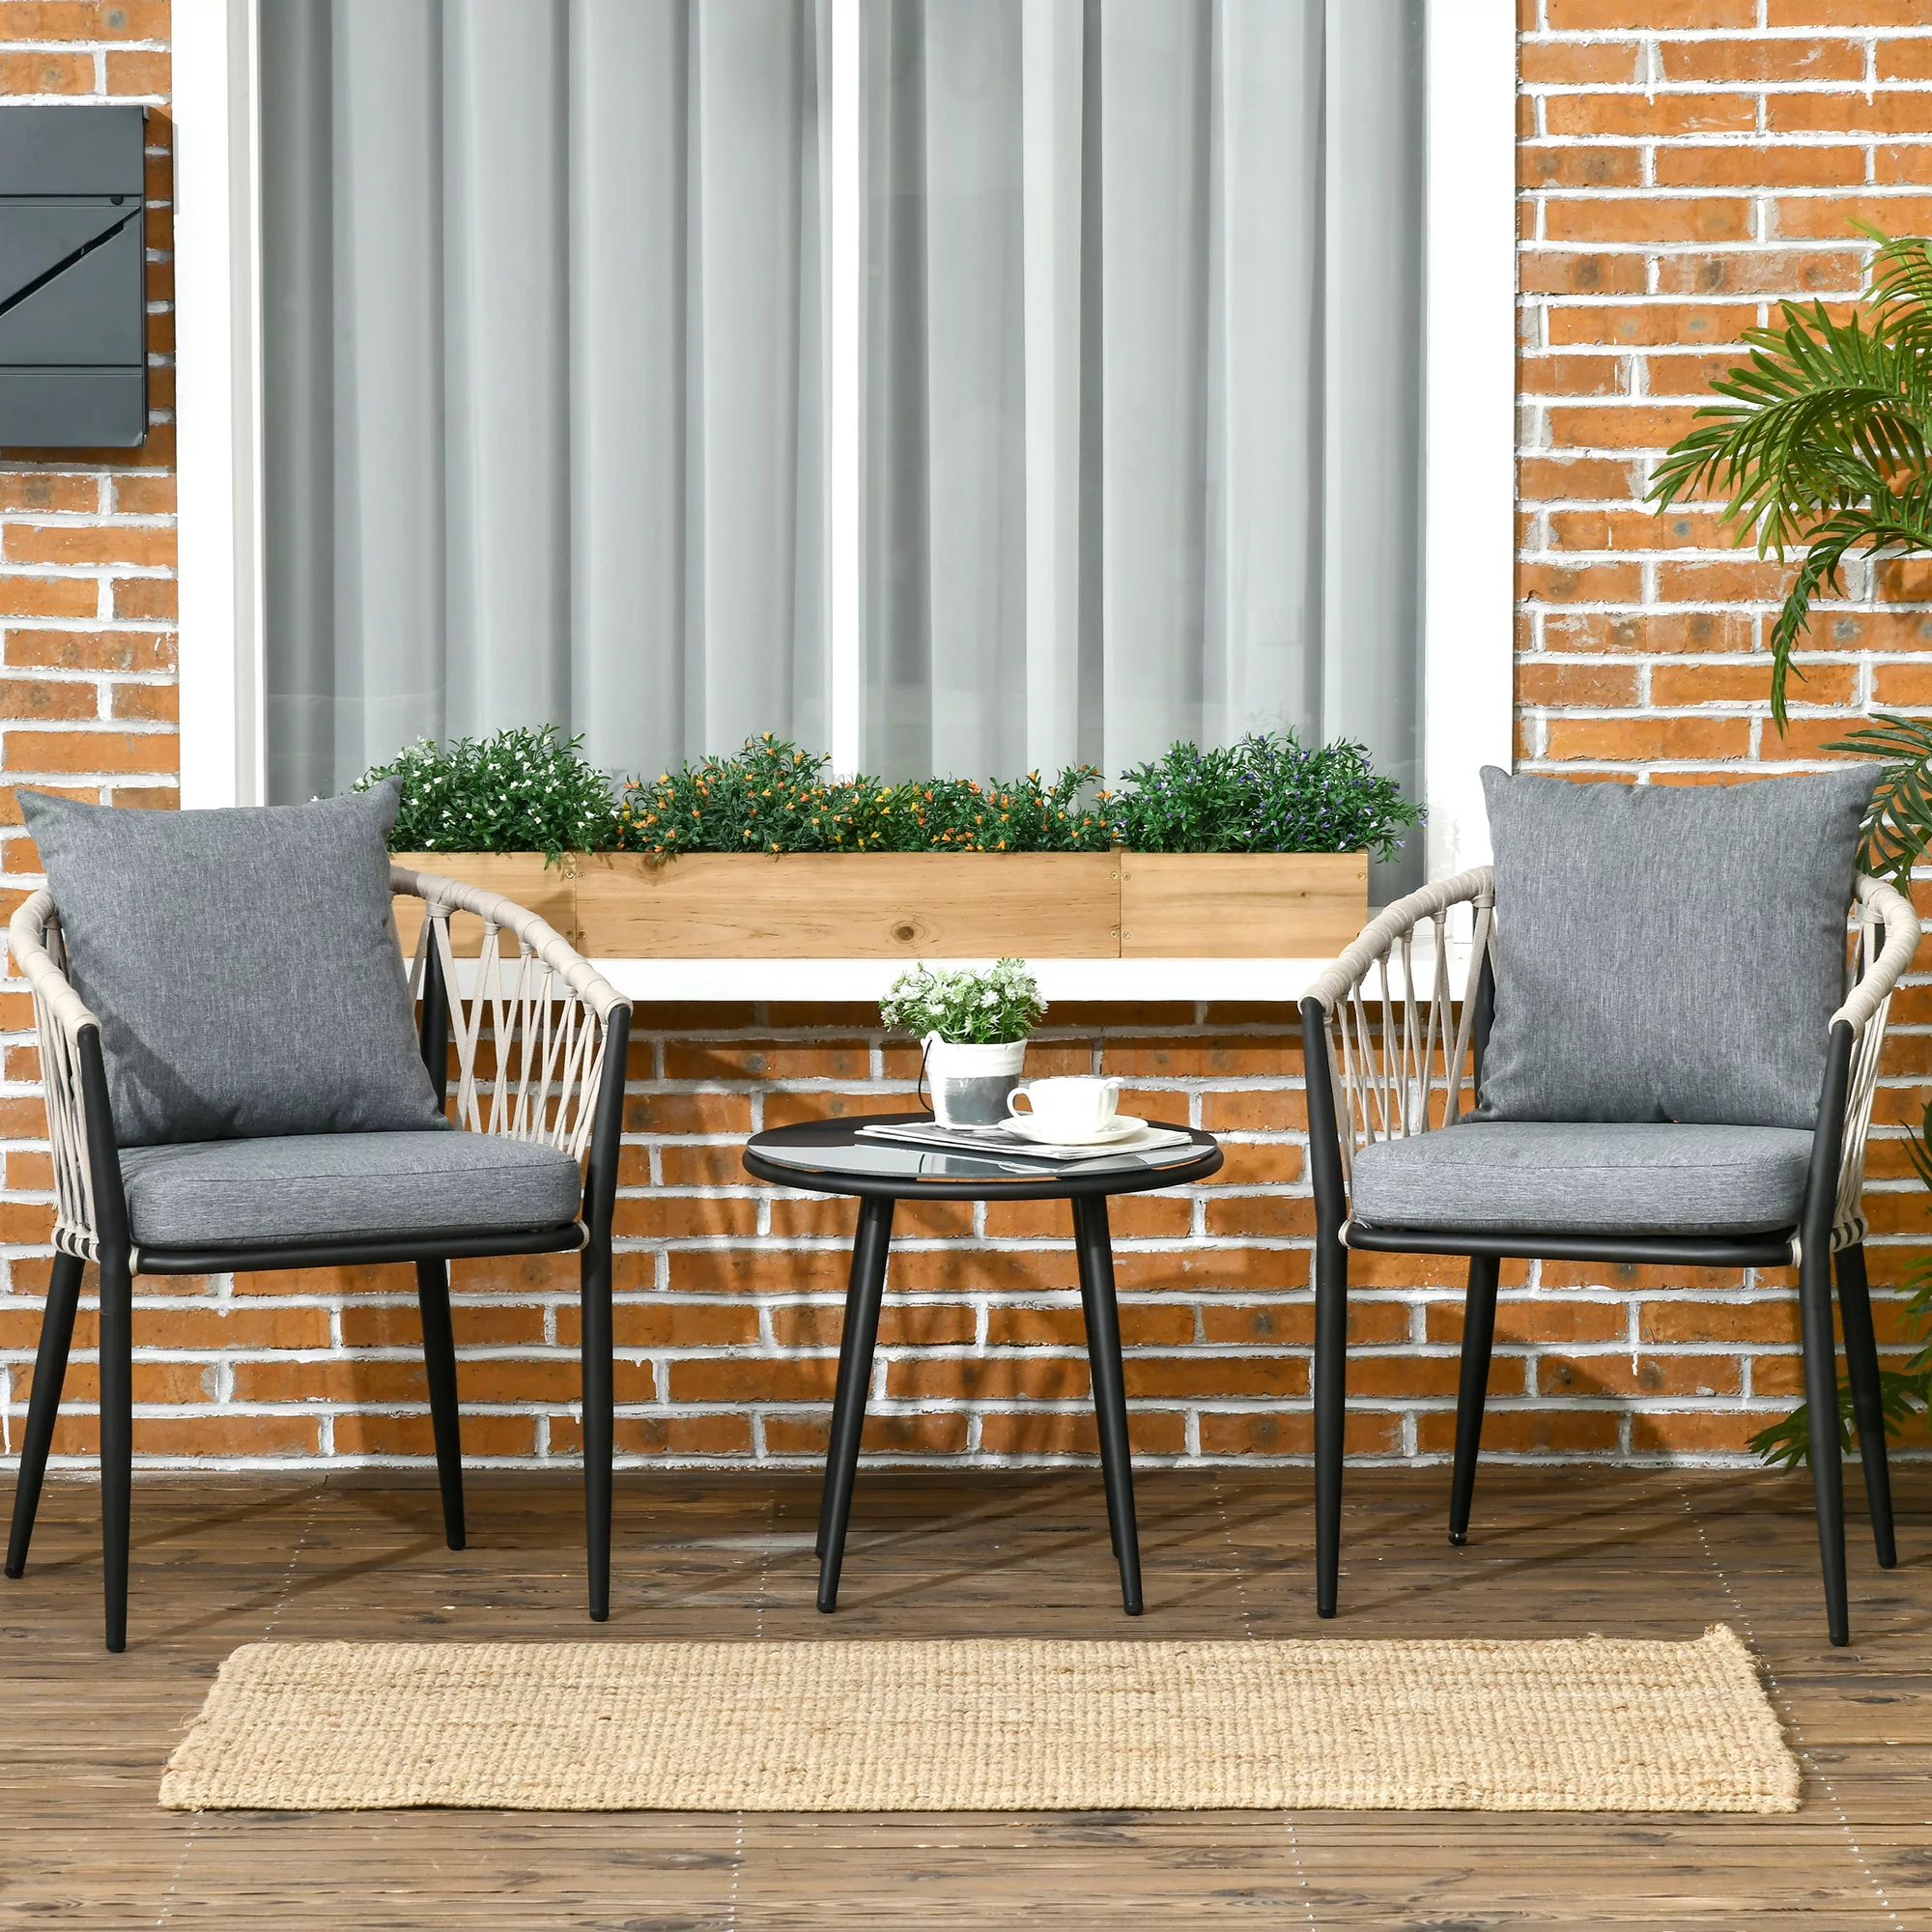 Tisch, 2 Stühle mit Sitzkissen, Balkon-Set, Stahl, Grau  Aosom.de günstig online kaufen